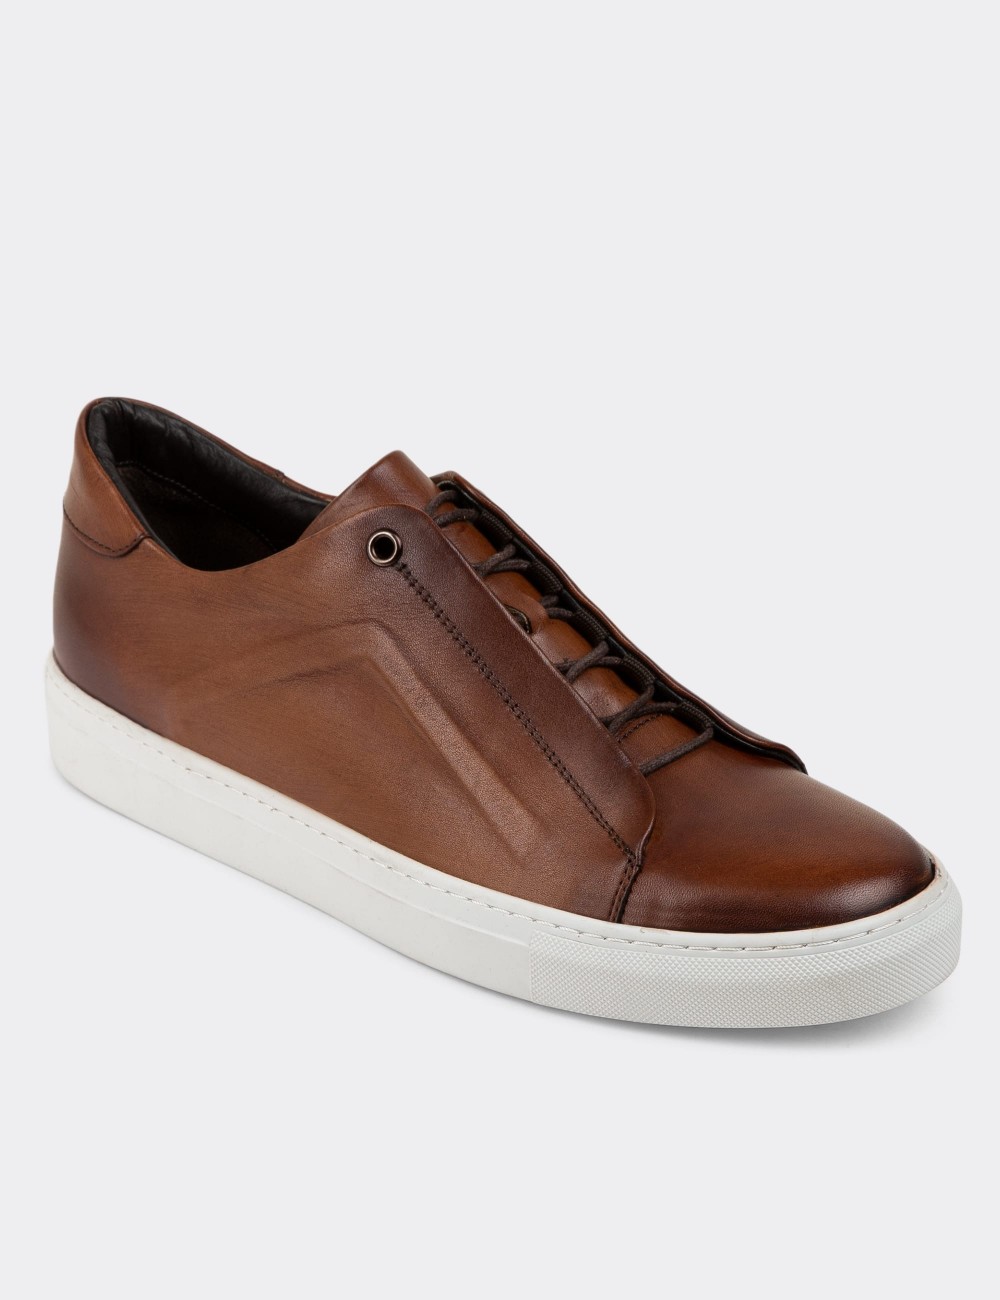 Tan Leather Sneakers - 01831MTBAC01